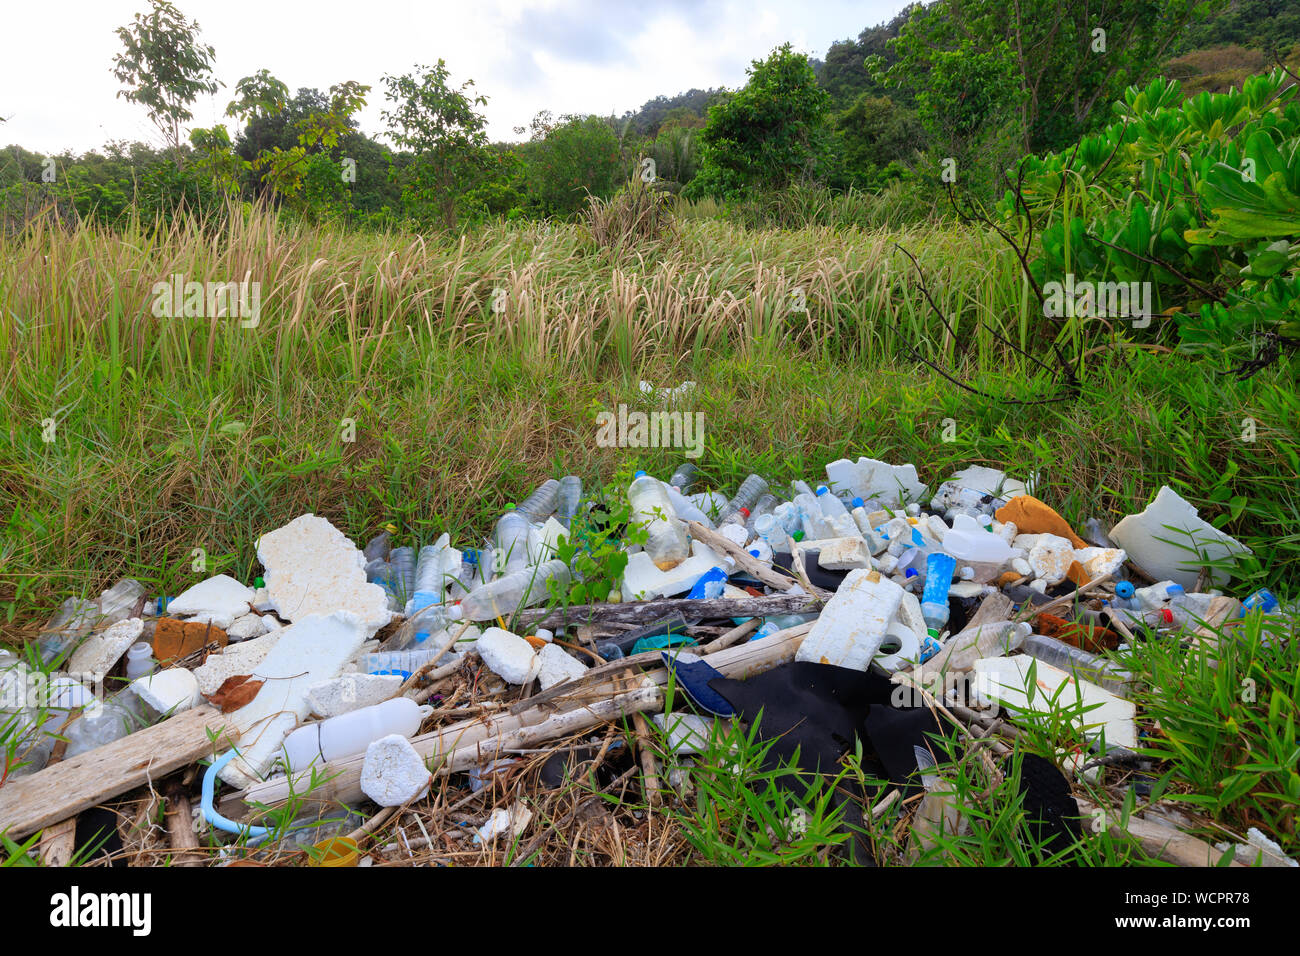 La pollution plastique important dans un pur vert prairie près d'une côte plage en Thailande Banque D'Images